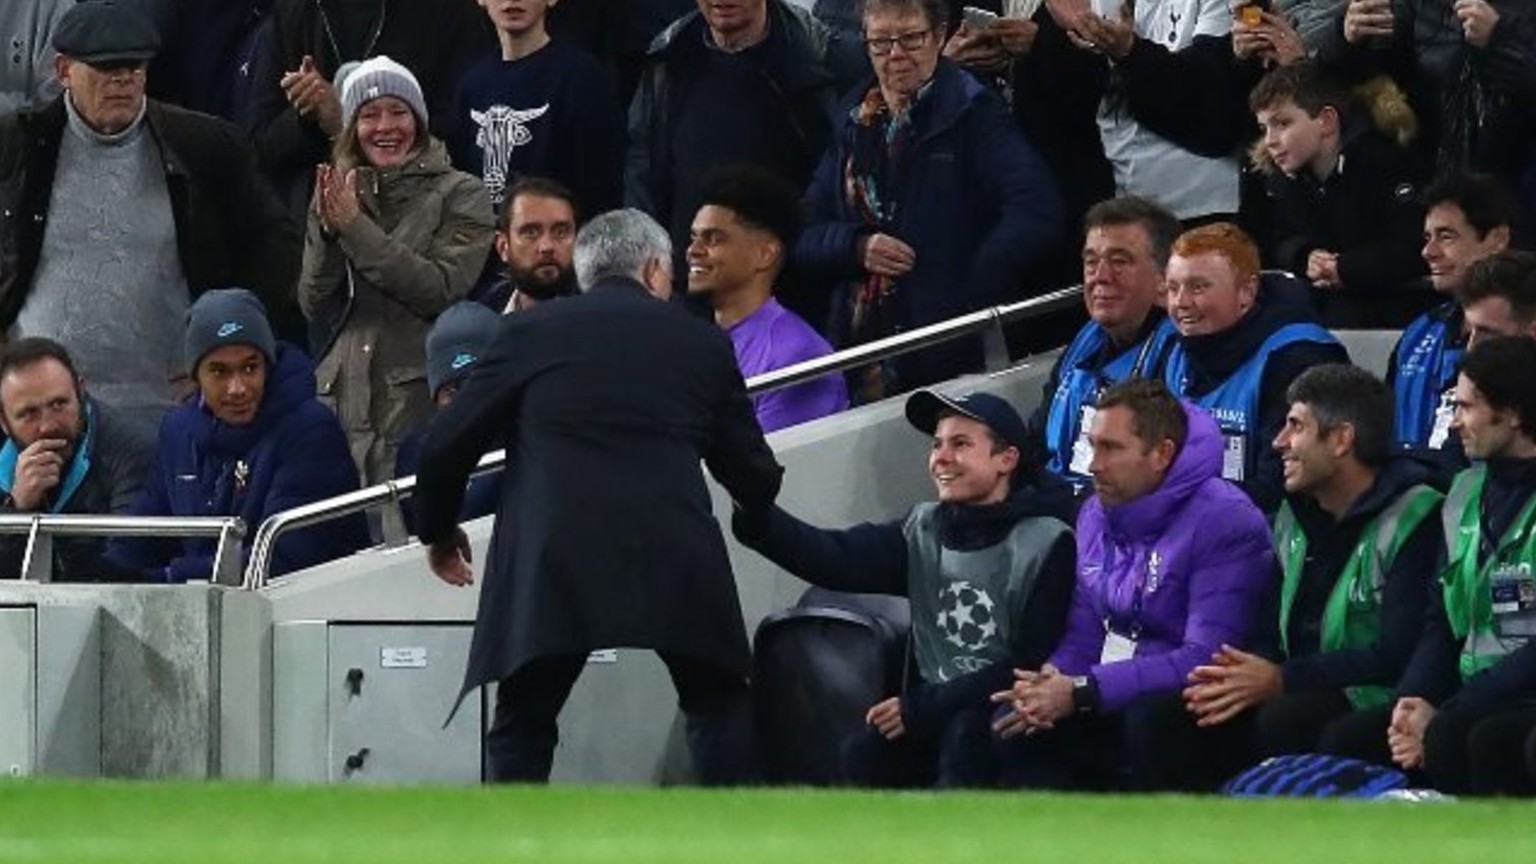 Sofort nach dem Tor bedankt sich Mourinho beim gedankenschnellen Callum.